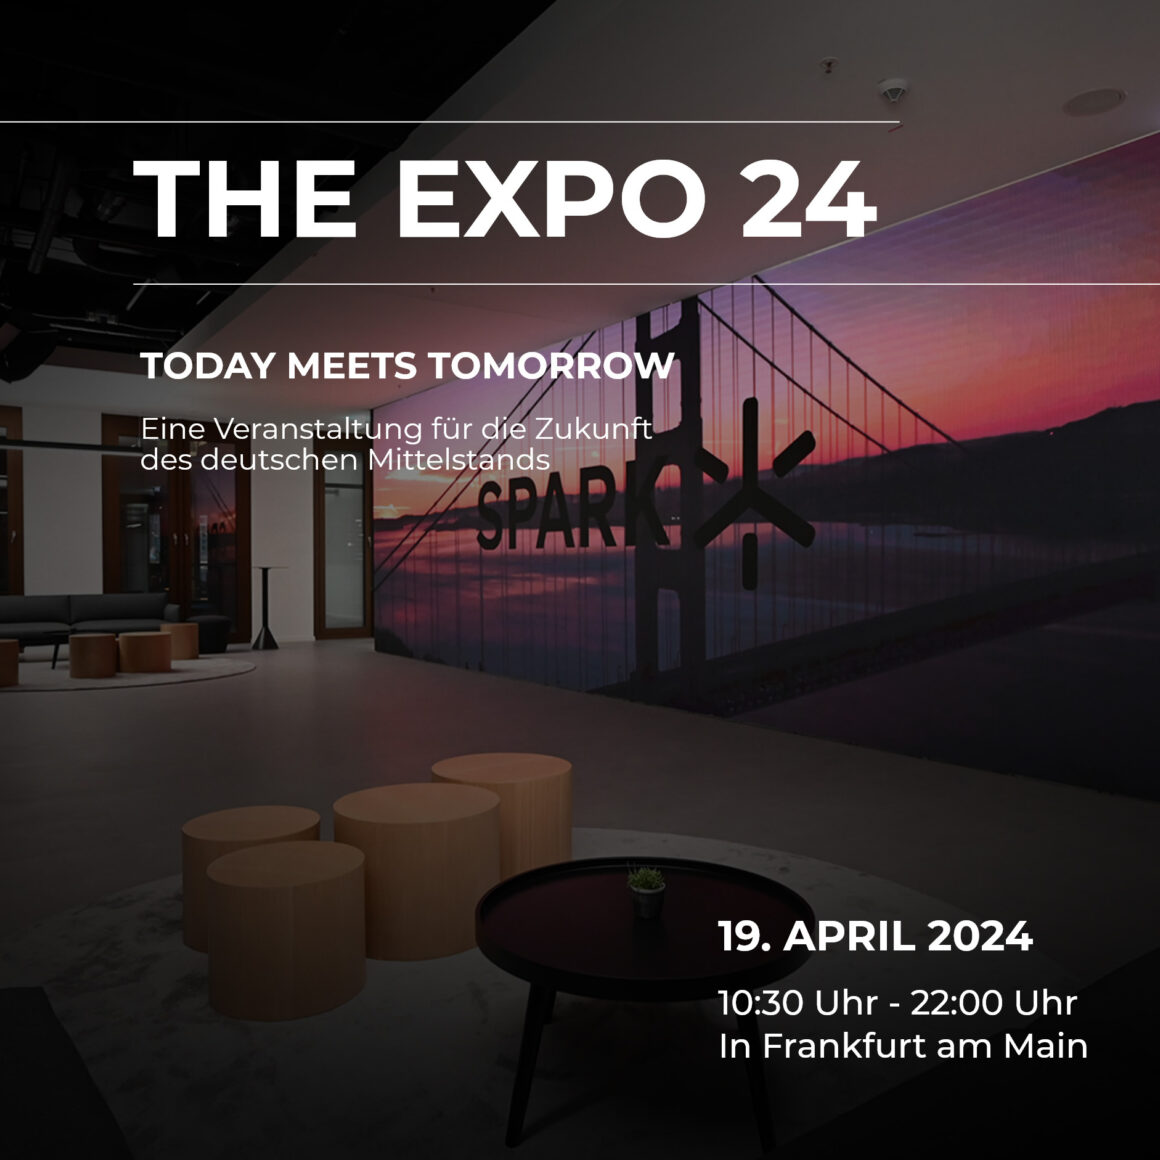 THE EXPO 24: Eine Veranstaltung für die Zukunft des deutschen Mittelstands